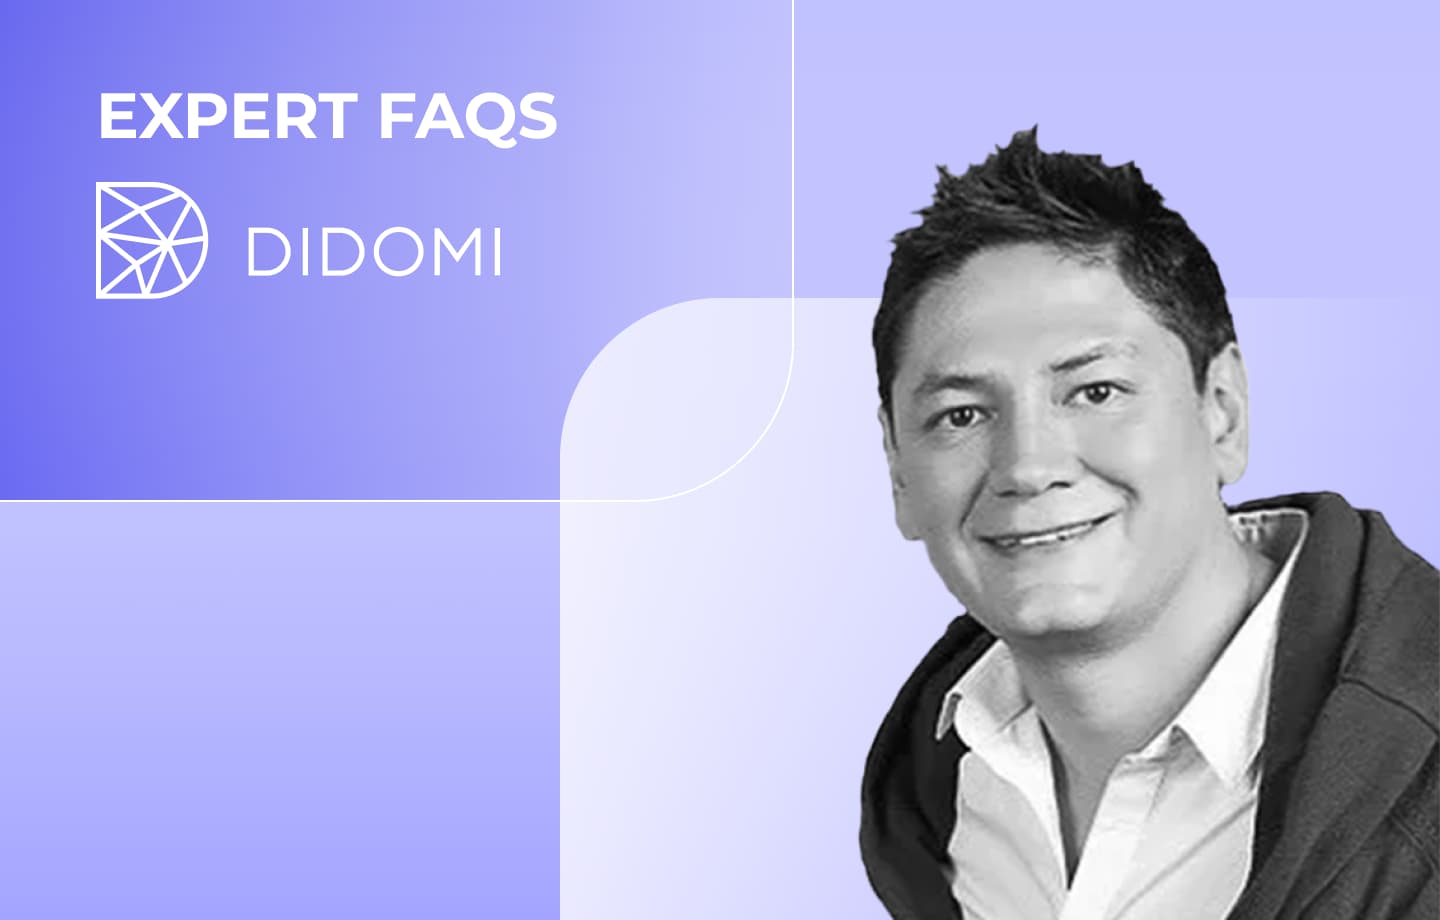 Antonio Anguiano, Didomi Expert FAQS